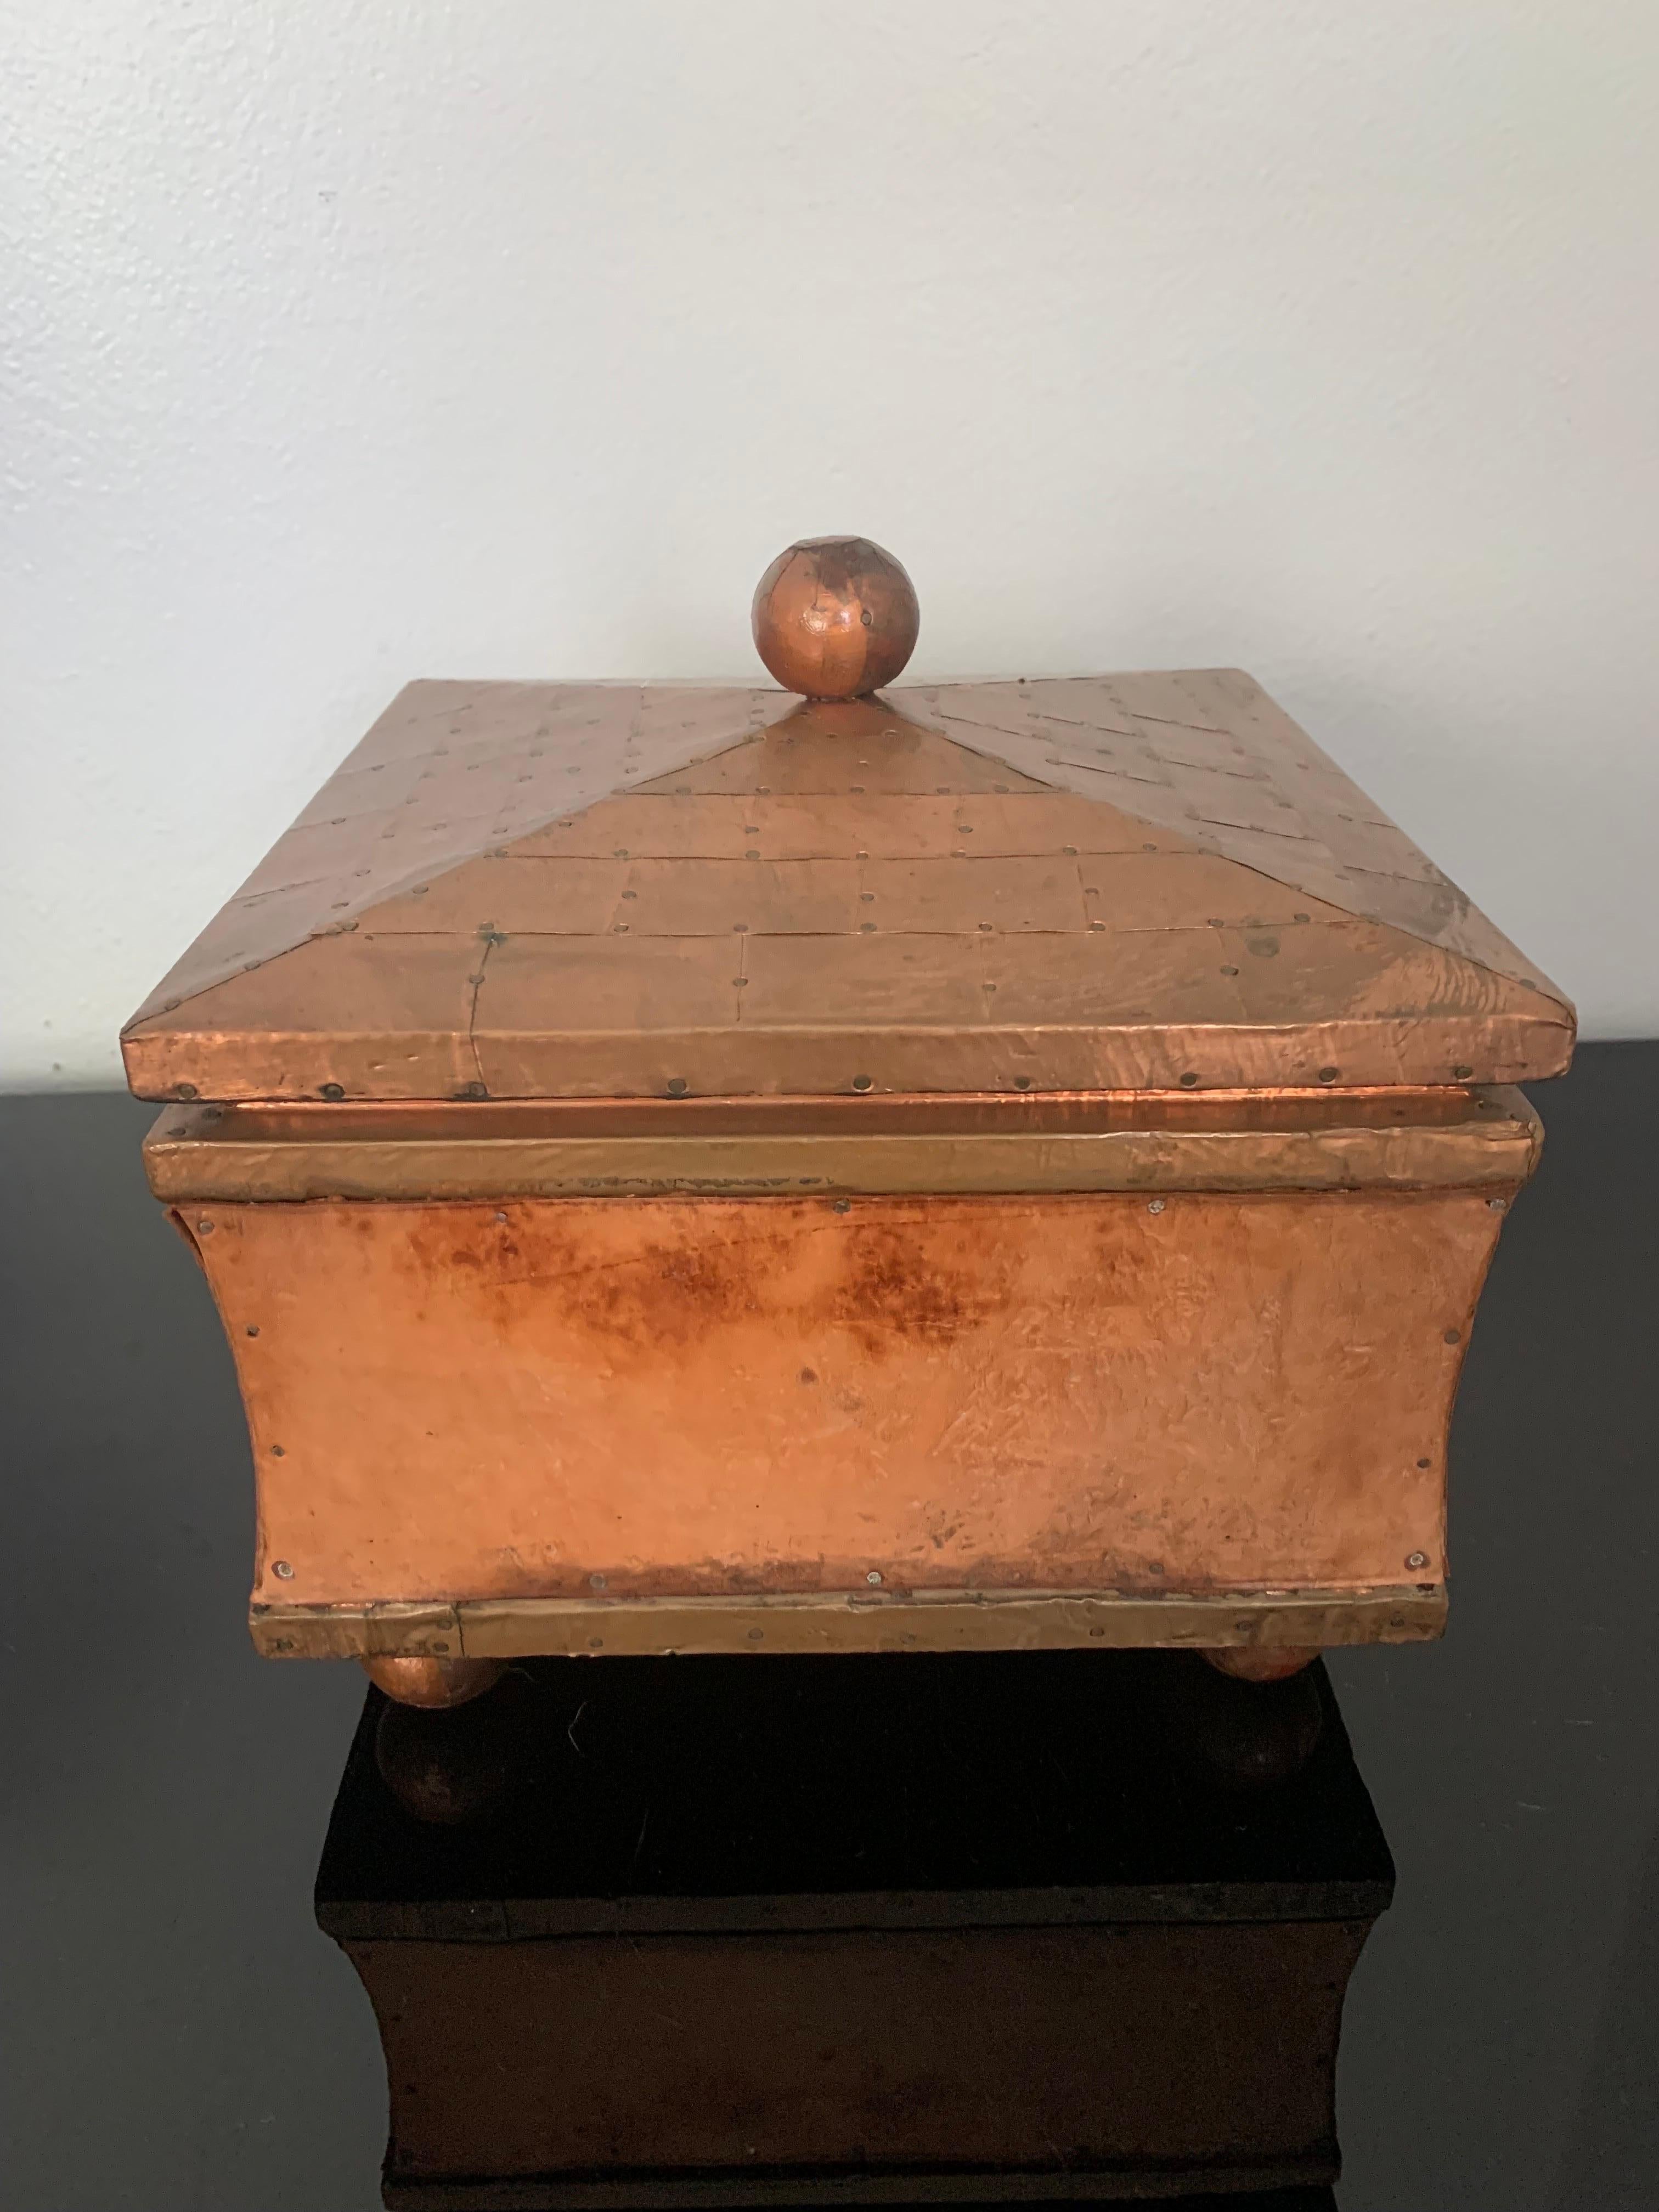 Belle boîte décorative en cuivre et cuir à la manière de Karl Springer. 

Le squelette de la boîte est en bois. Le dessus et les bords sont constitués de carrés de cuivre coupés en bardeaux et fixés par des clous en cuivre. Les côtés de la boîte